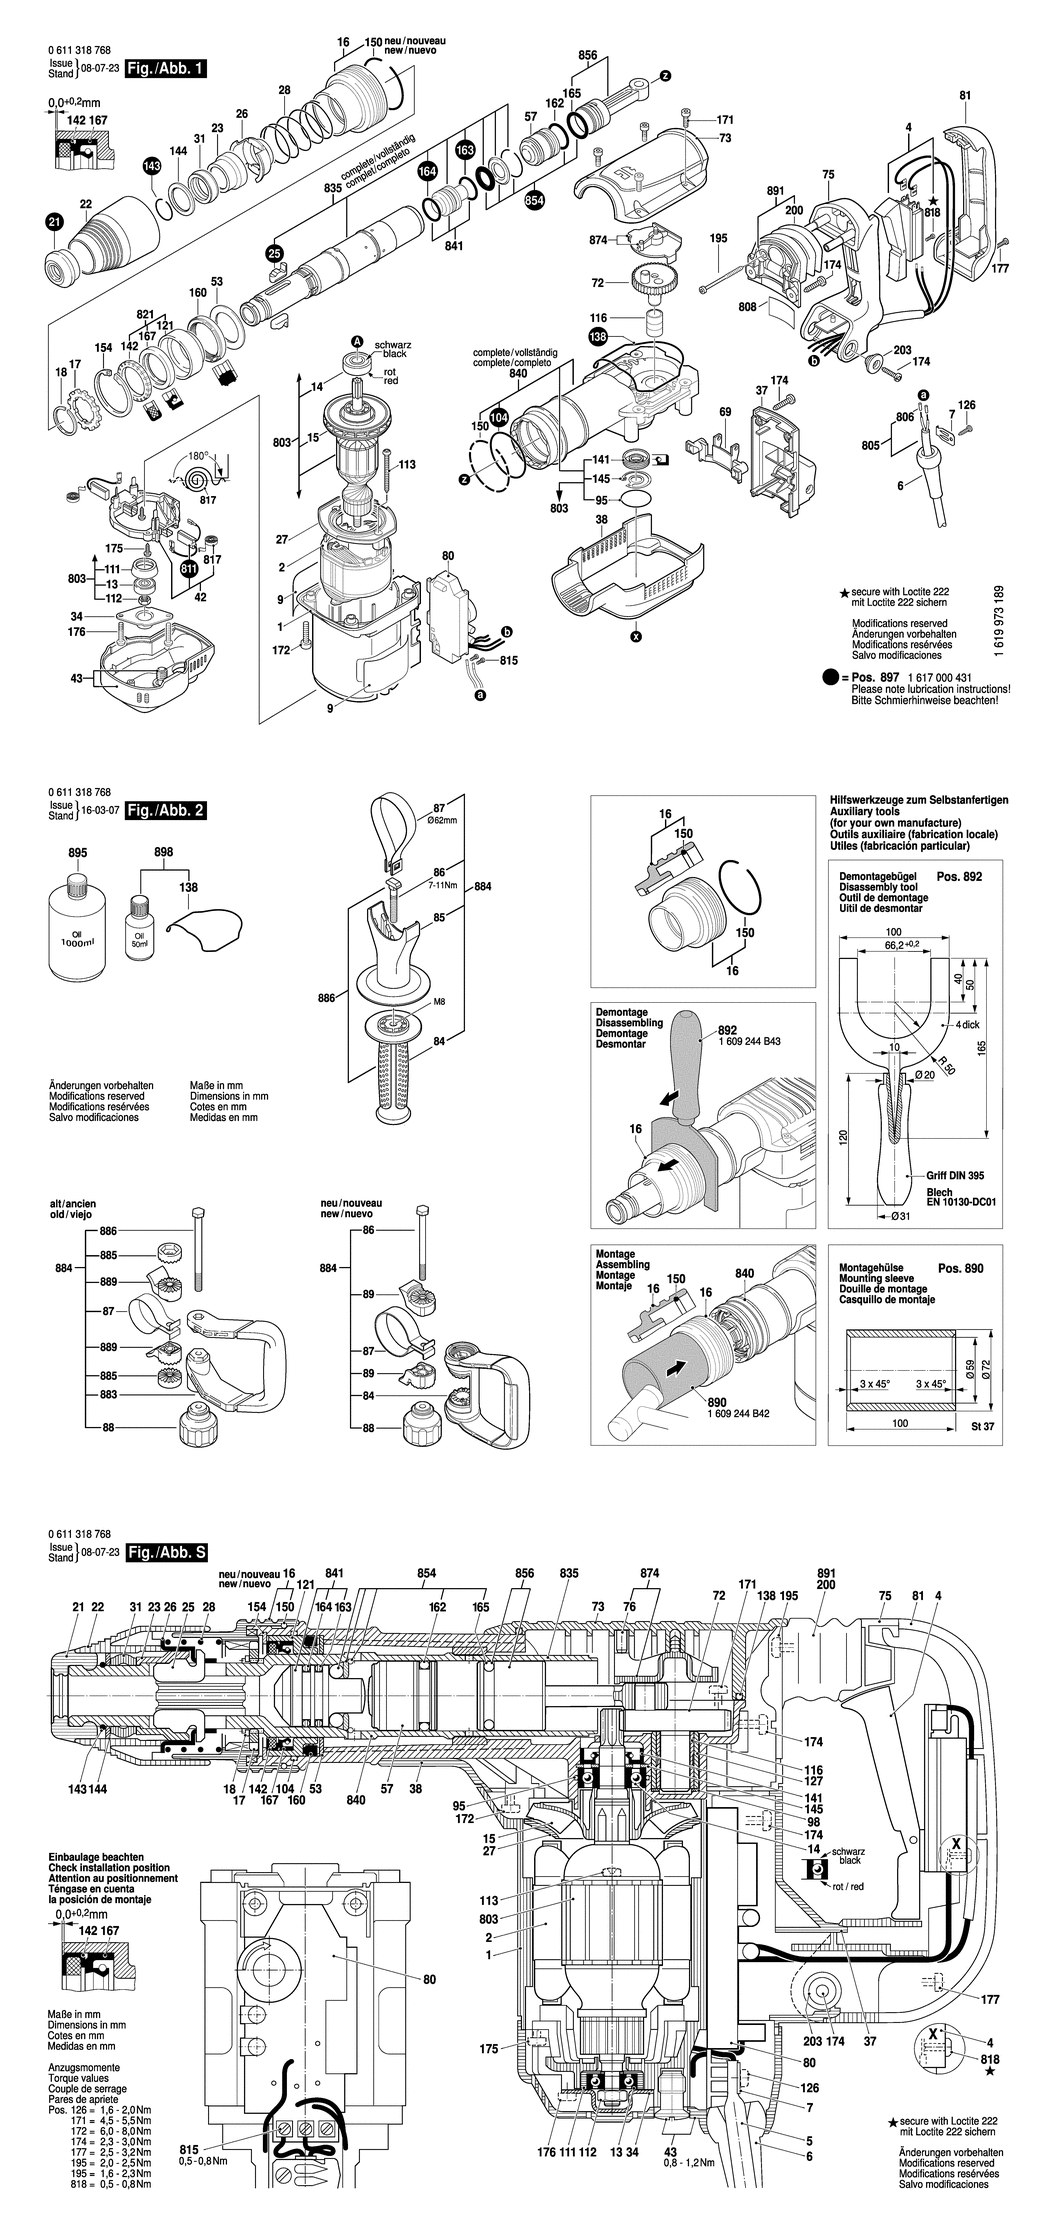 Bosch MH 5-XE / 0611318768 / EU 230 Volt Spare Parts